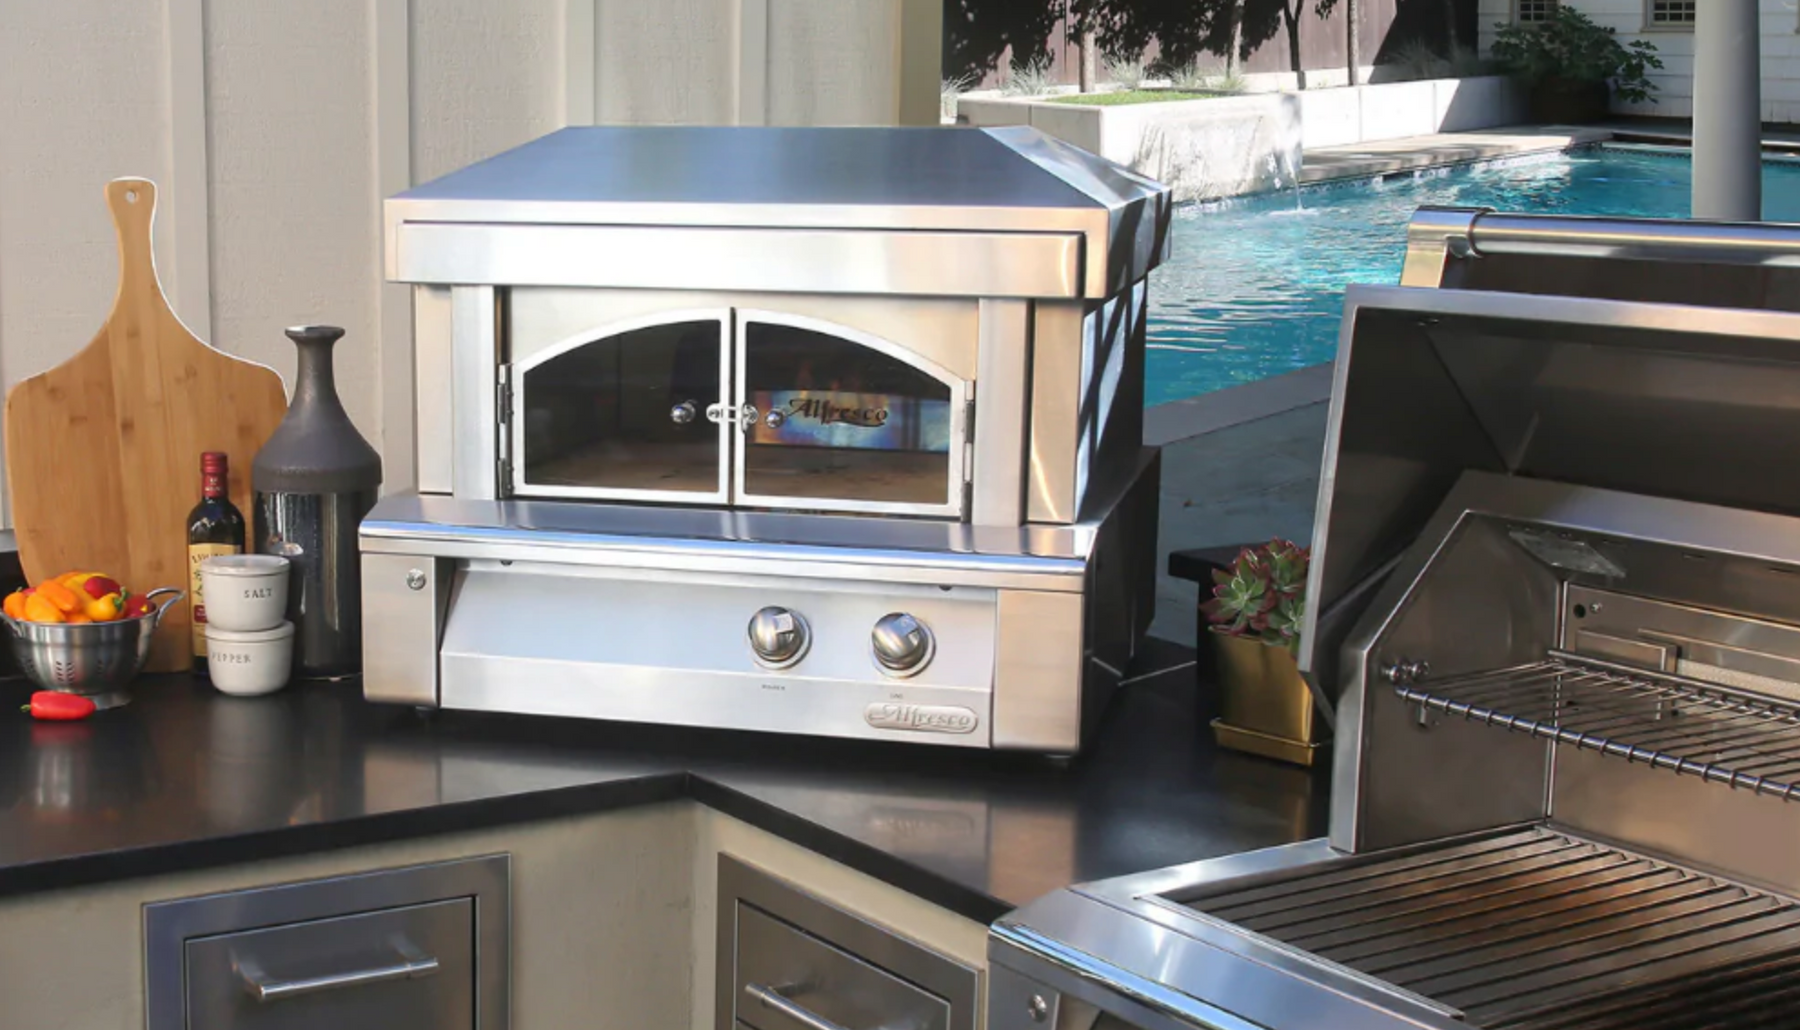 Alfresco Pizza Oven Expert Review - Countertop & Built-In Models